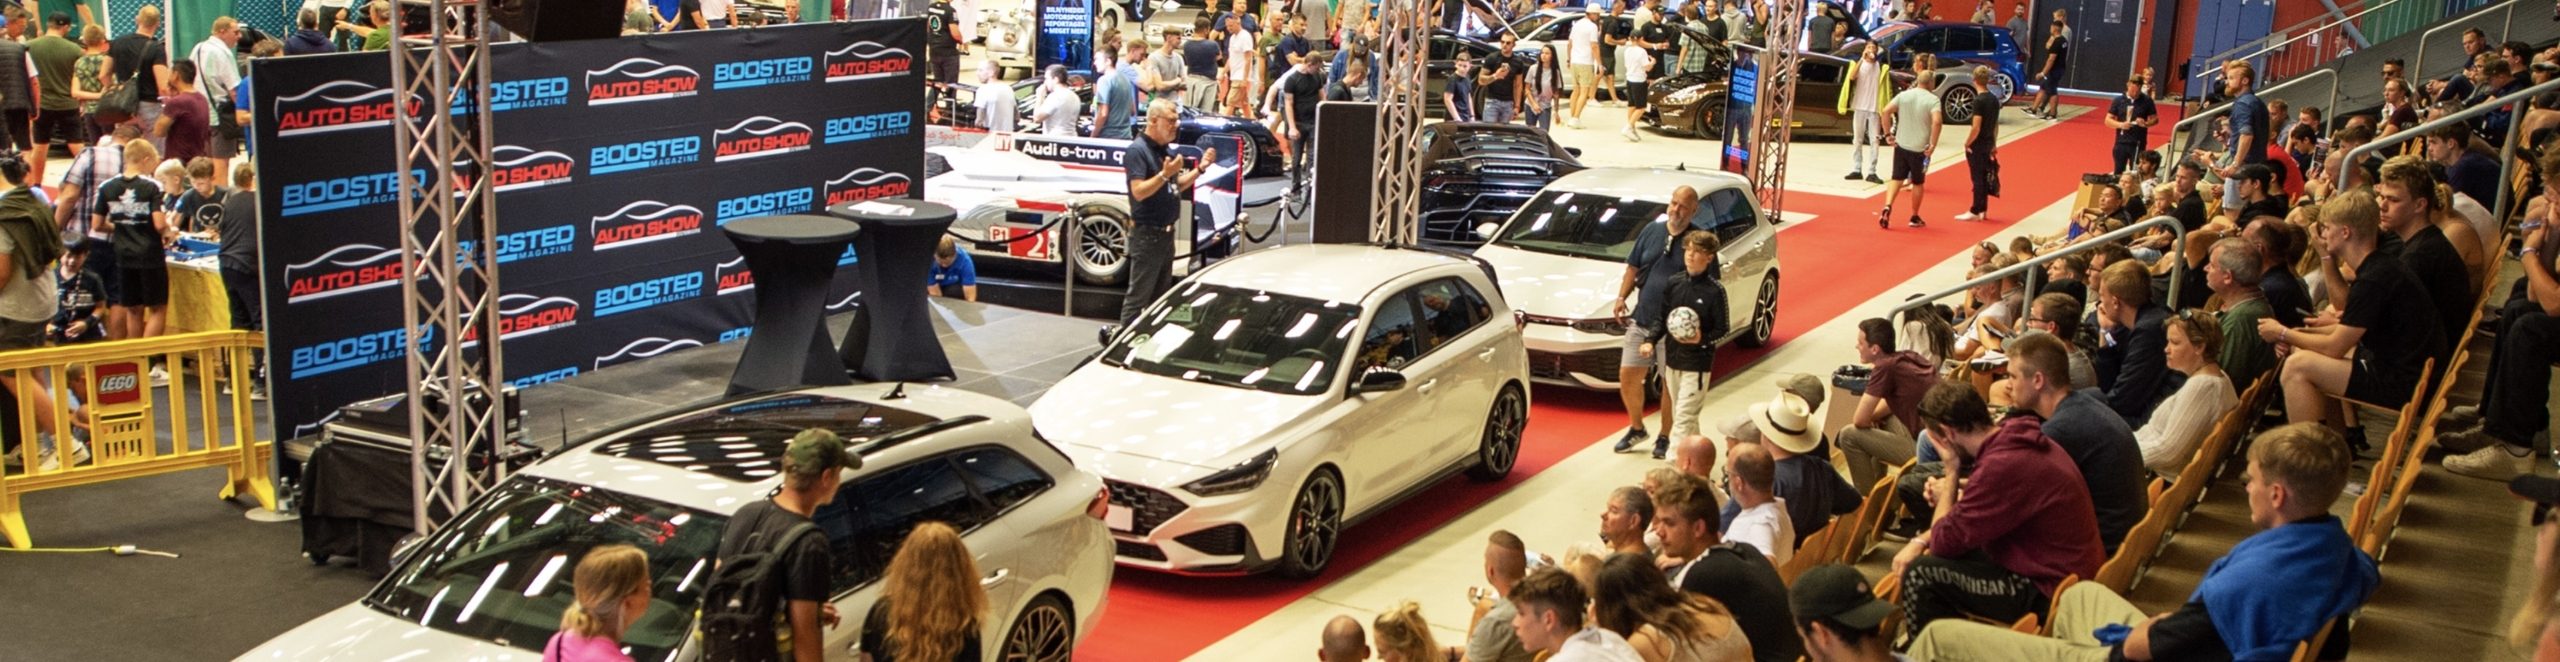 Udstillere til Auto Show - Danmarks største bilmesse og bilshow